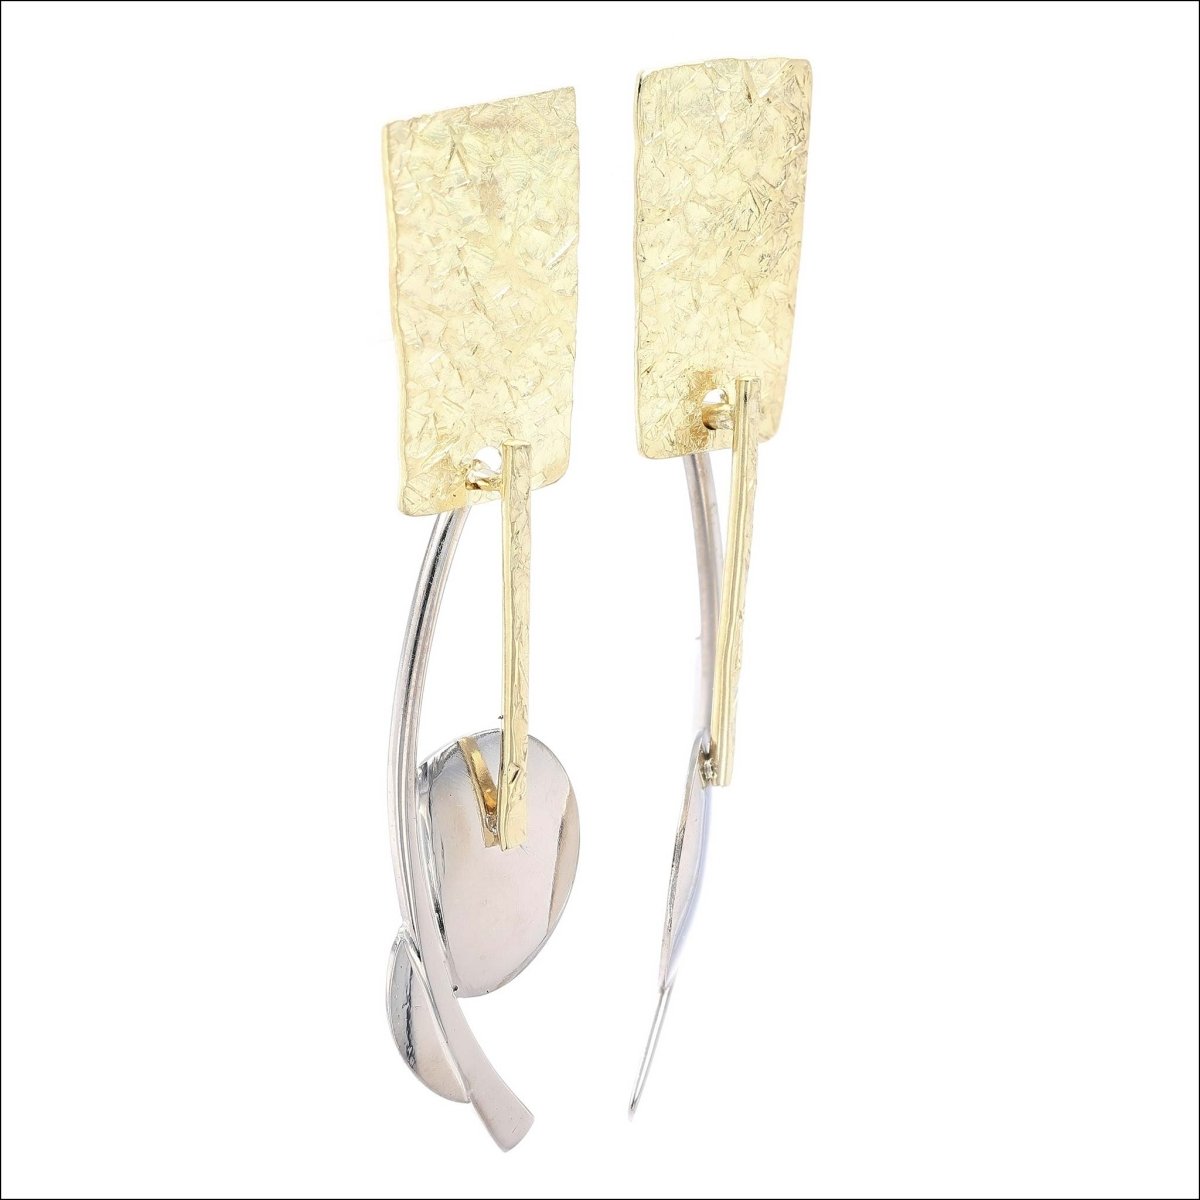 Rough Hewn Asymmetrical Earrings 18KY 14KW - JewelsmithEarrings